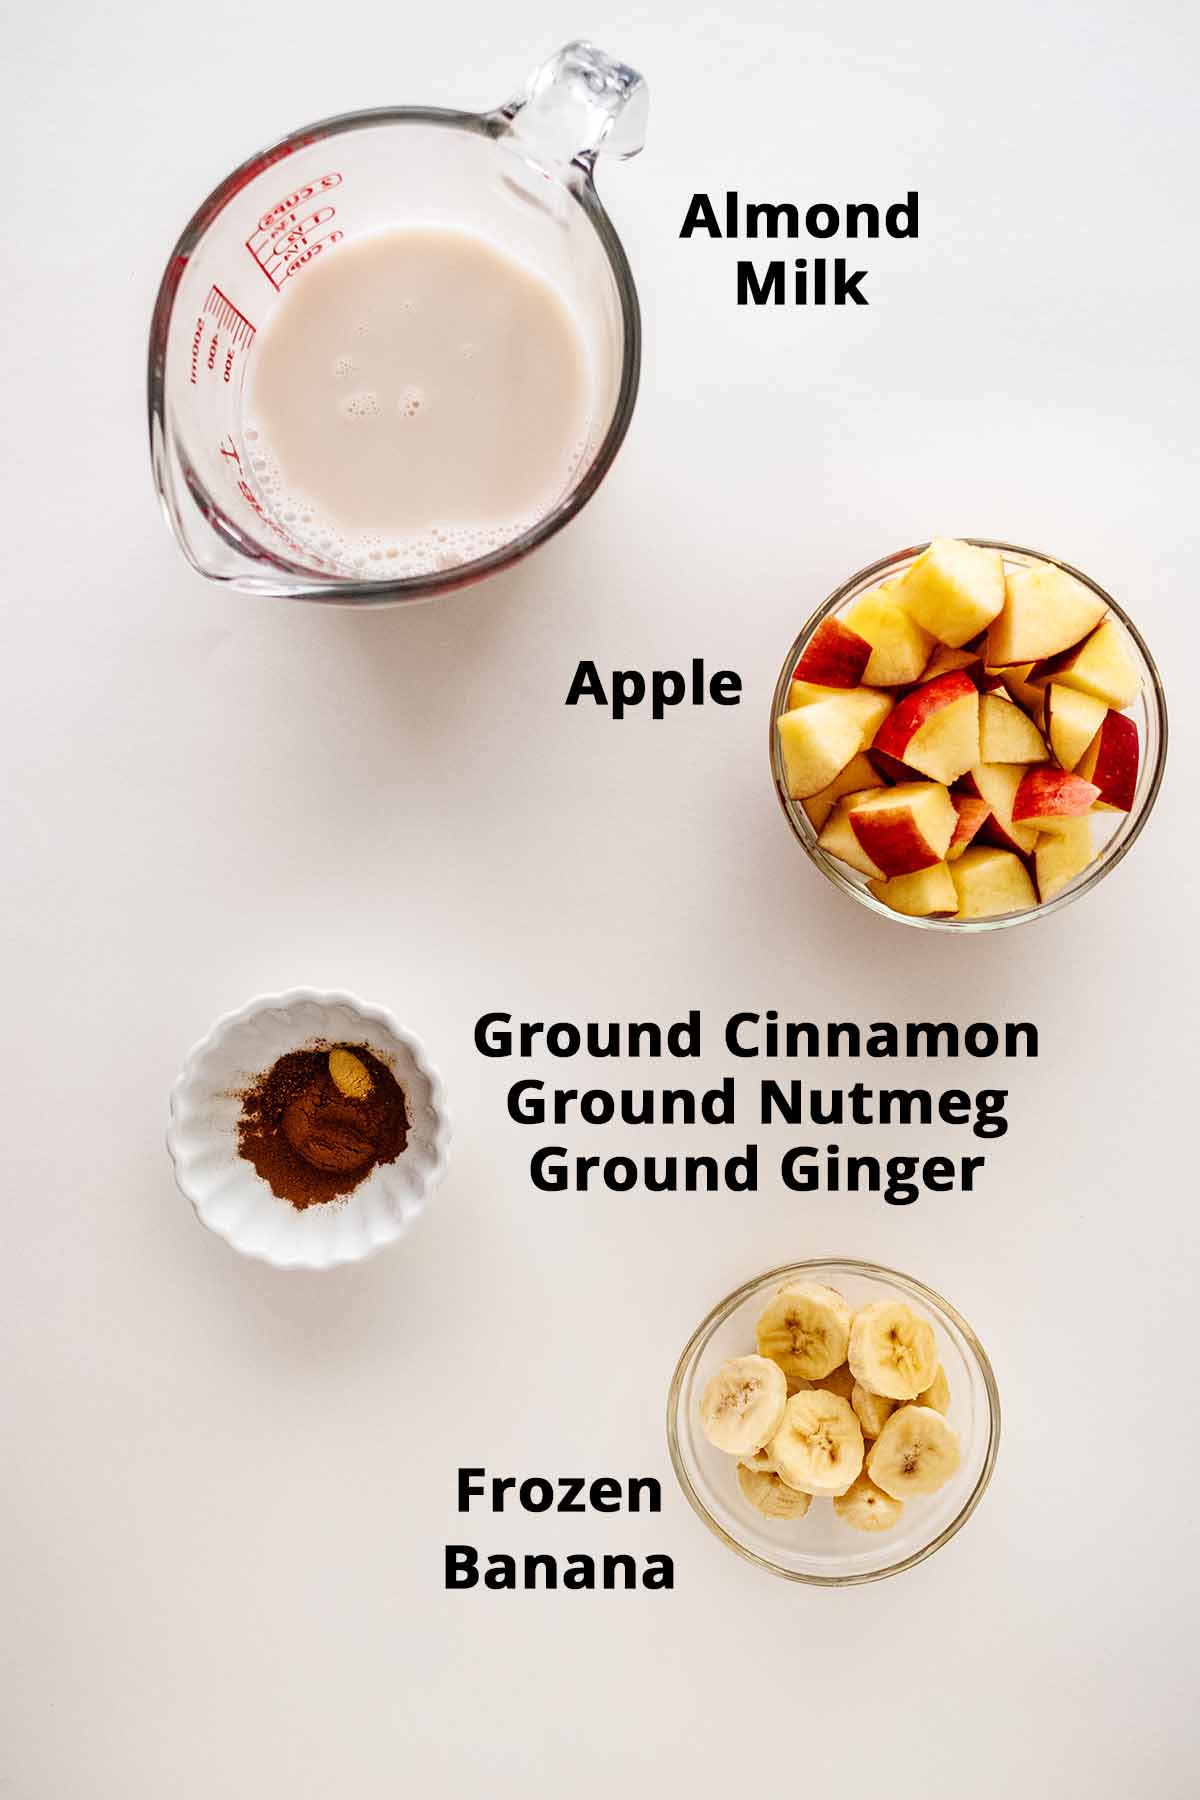 Apple pie smoothie ingredients